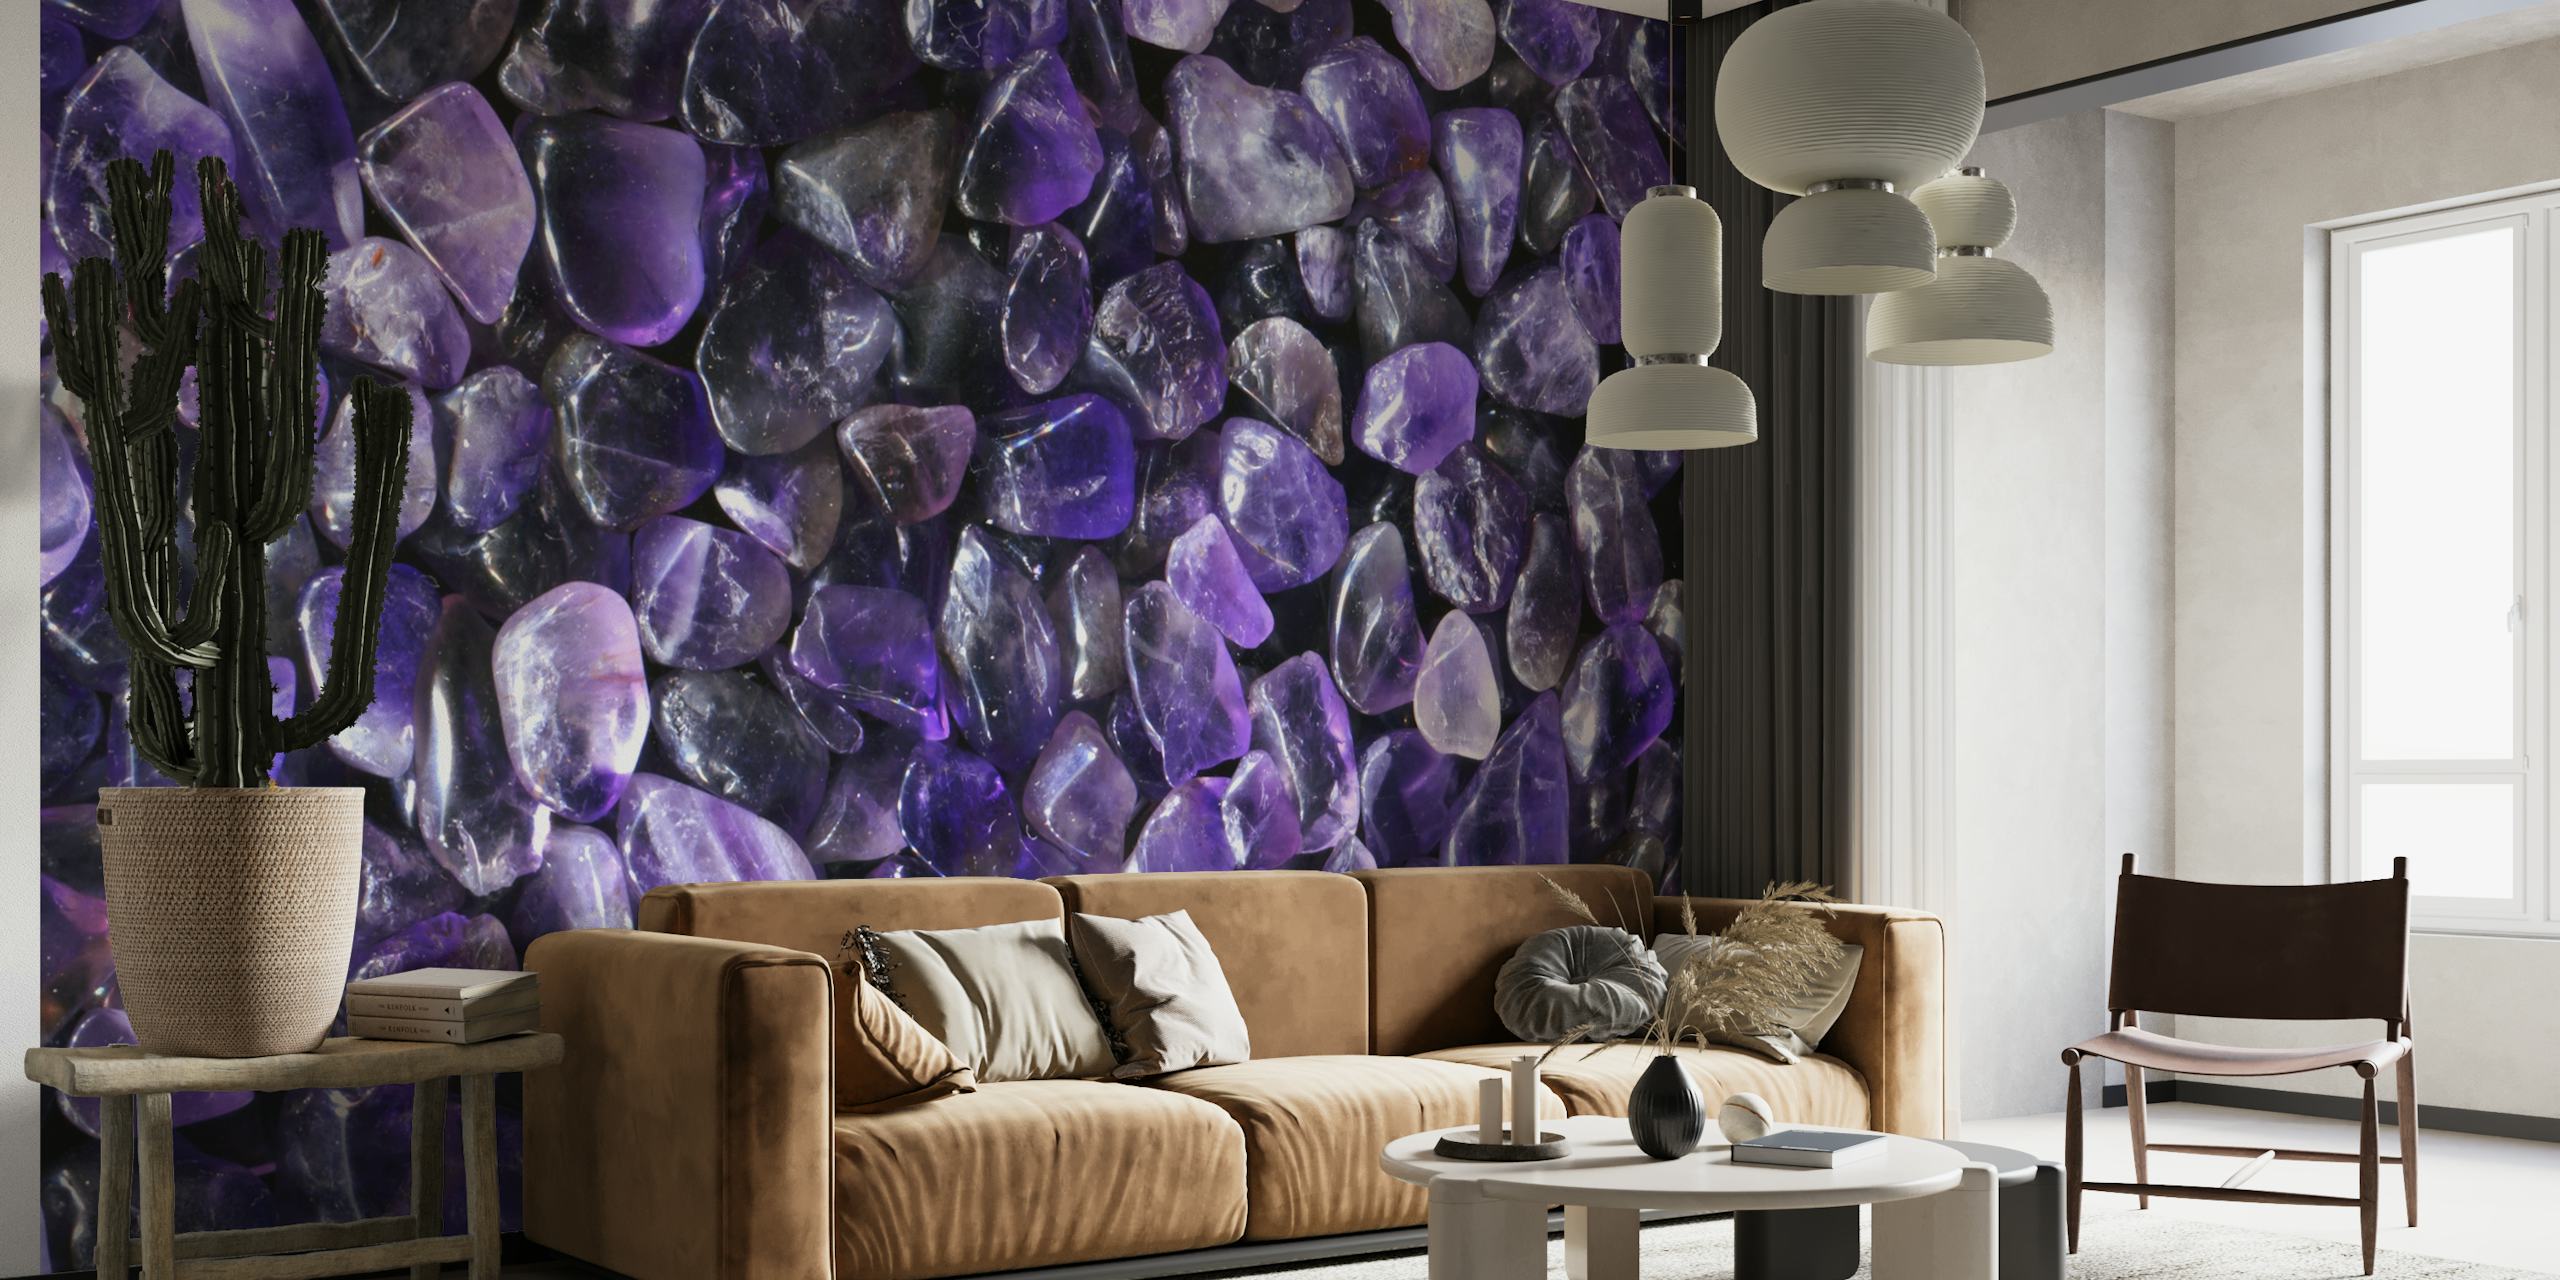 Fototapete mit lilafarbenen Edelsteinen und einer großzügigen Auswahl an violetten kristallinen Steinen